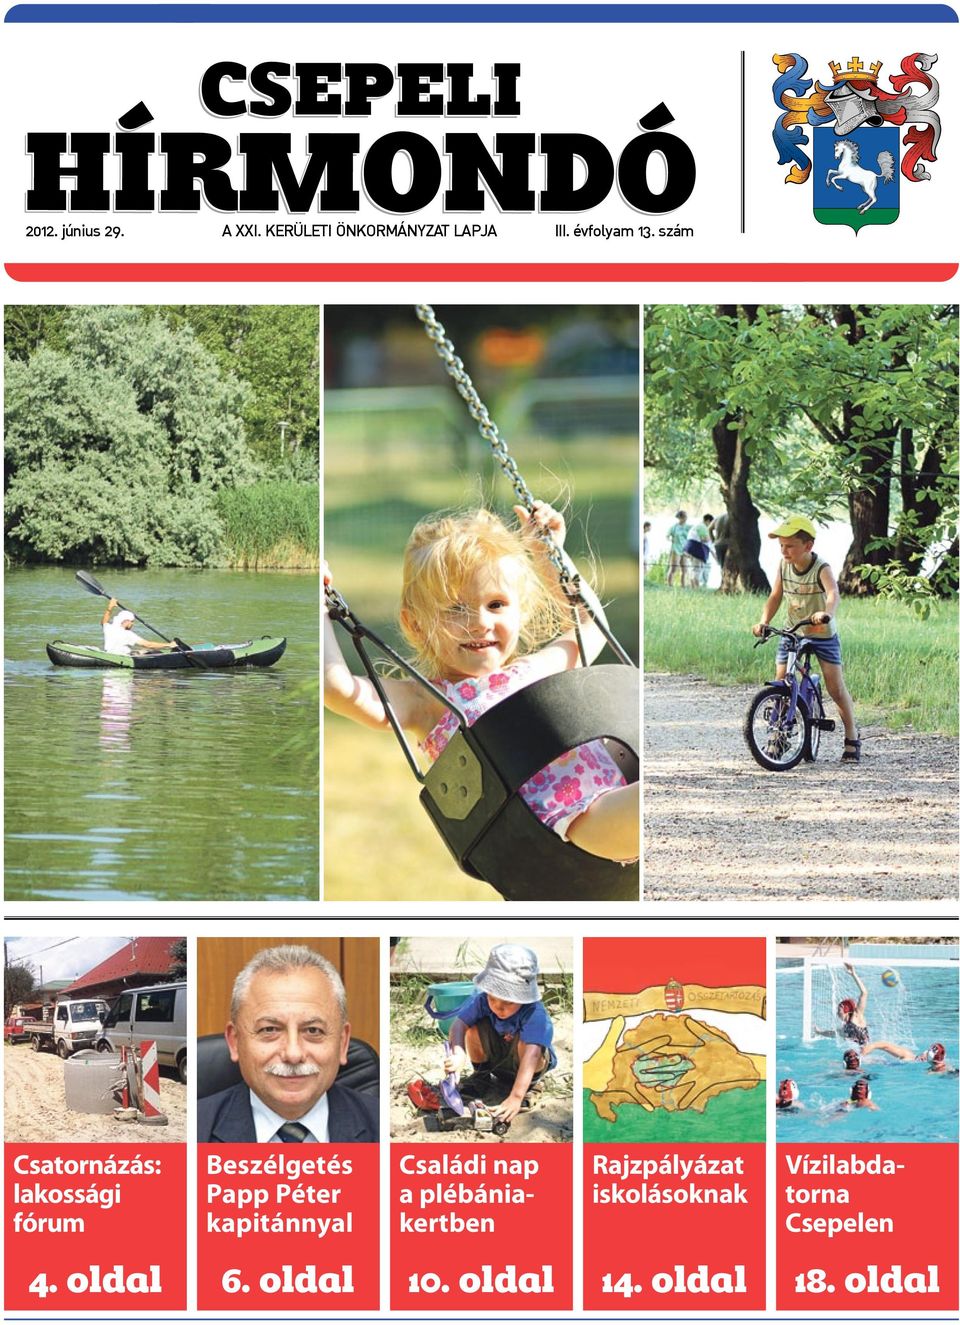 HÍRMONDÓ CSEPELI. Duna-part. 6. oldal. 18. oldal. 10. oldal. 14. oldal. 4.  oldal. Rajzpályázat iskolásoknak. Csatornázás: lakossági fórum - PDF  Ingyenes letöltés